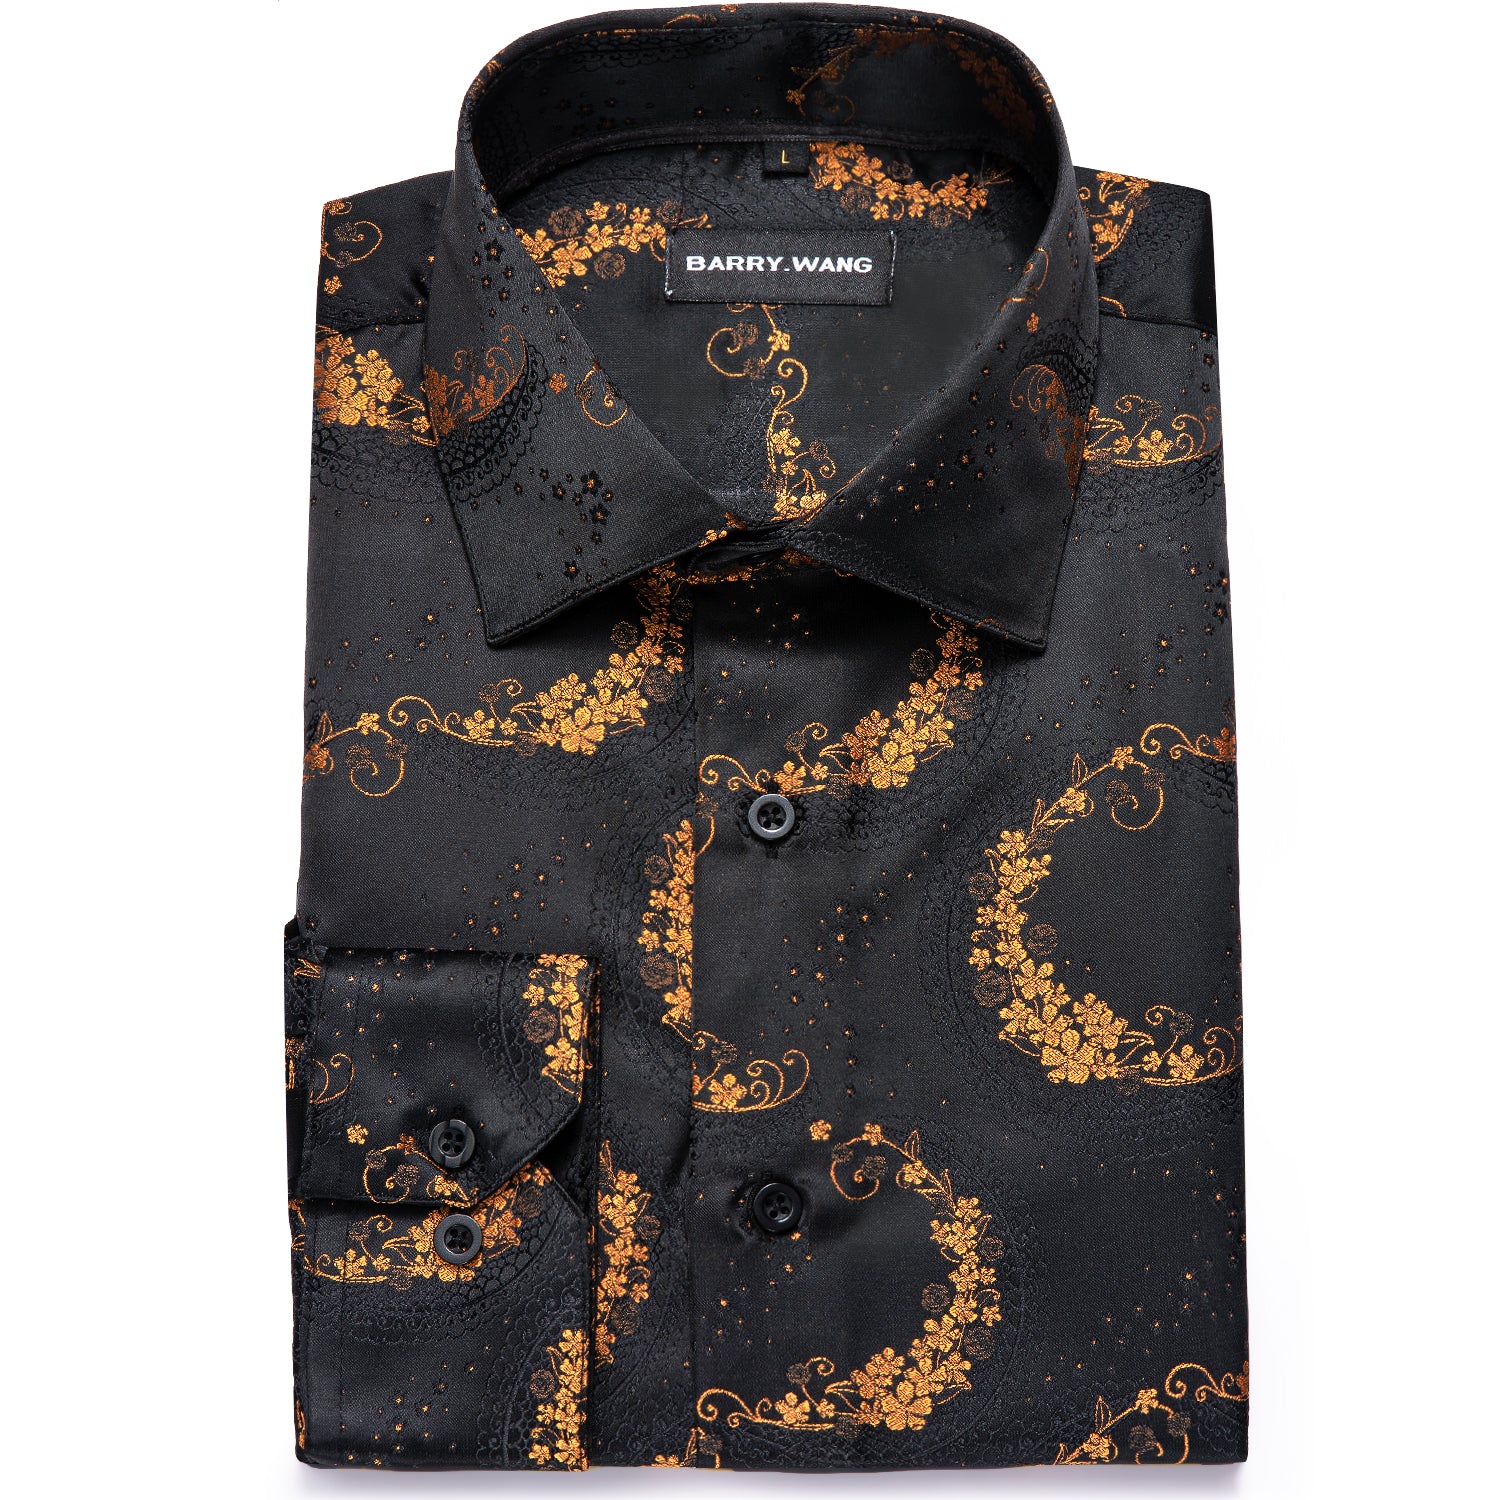 Barry.wang Men's Shirt Black Golden Floral Silk Floral Button Up Shirt